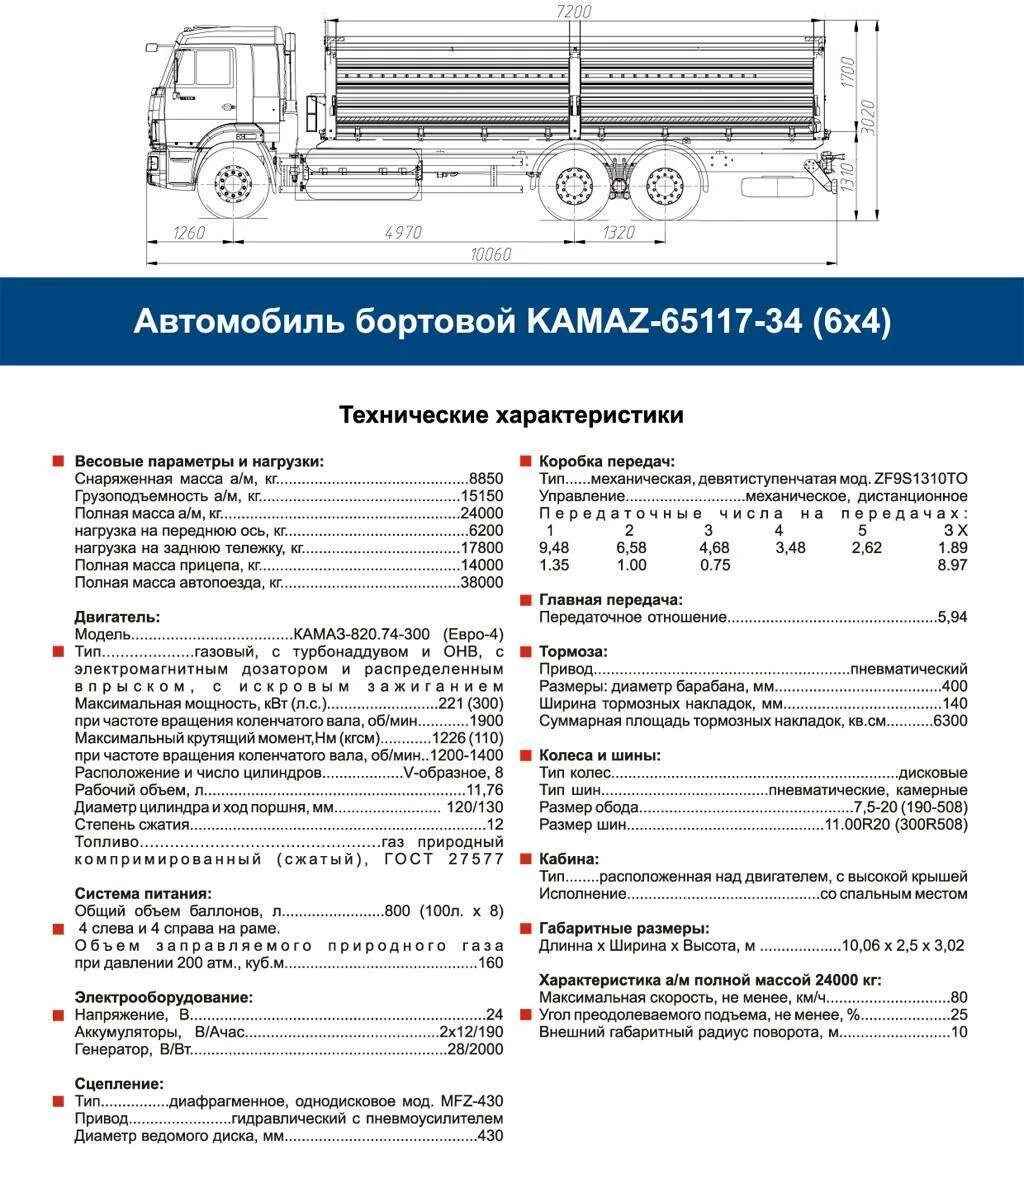 КАМАЗ 65115 бортовой технические характеристики. КАМАЗ 65115 бортовой нагрузка на ось. Габариты кузова КАМАЗ 65117 бортовой. КАМАЗ 5320 бортовой технические характеристики.